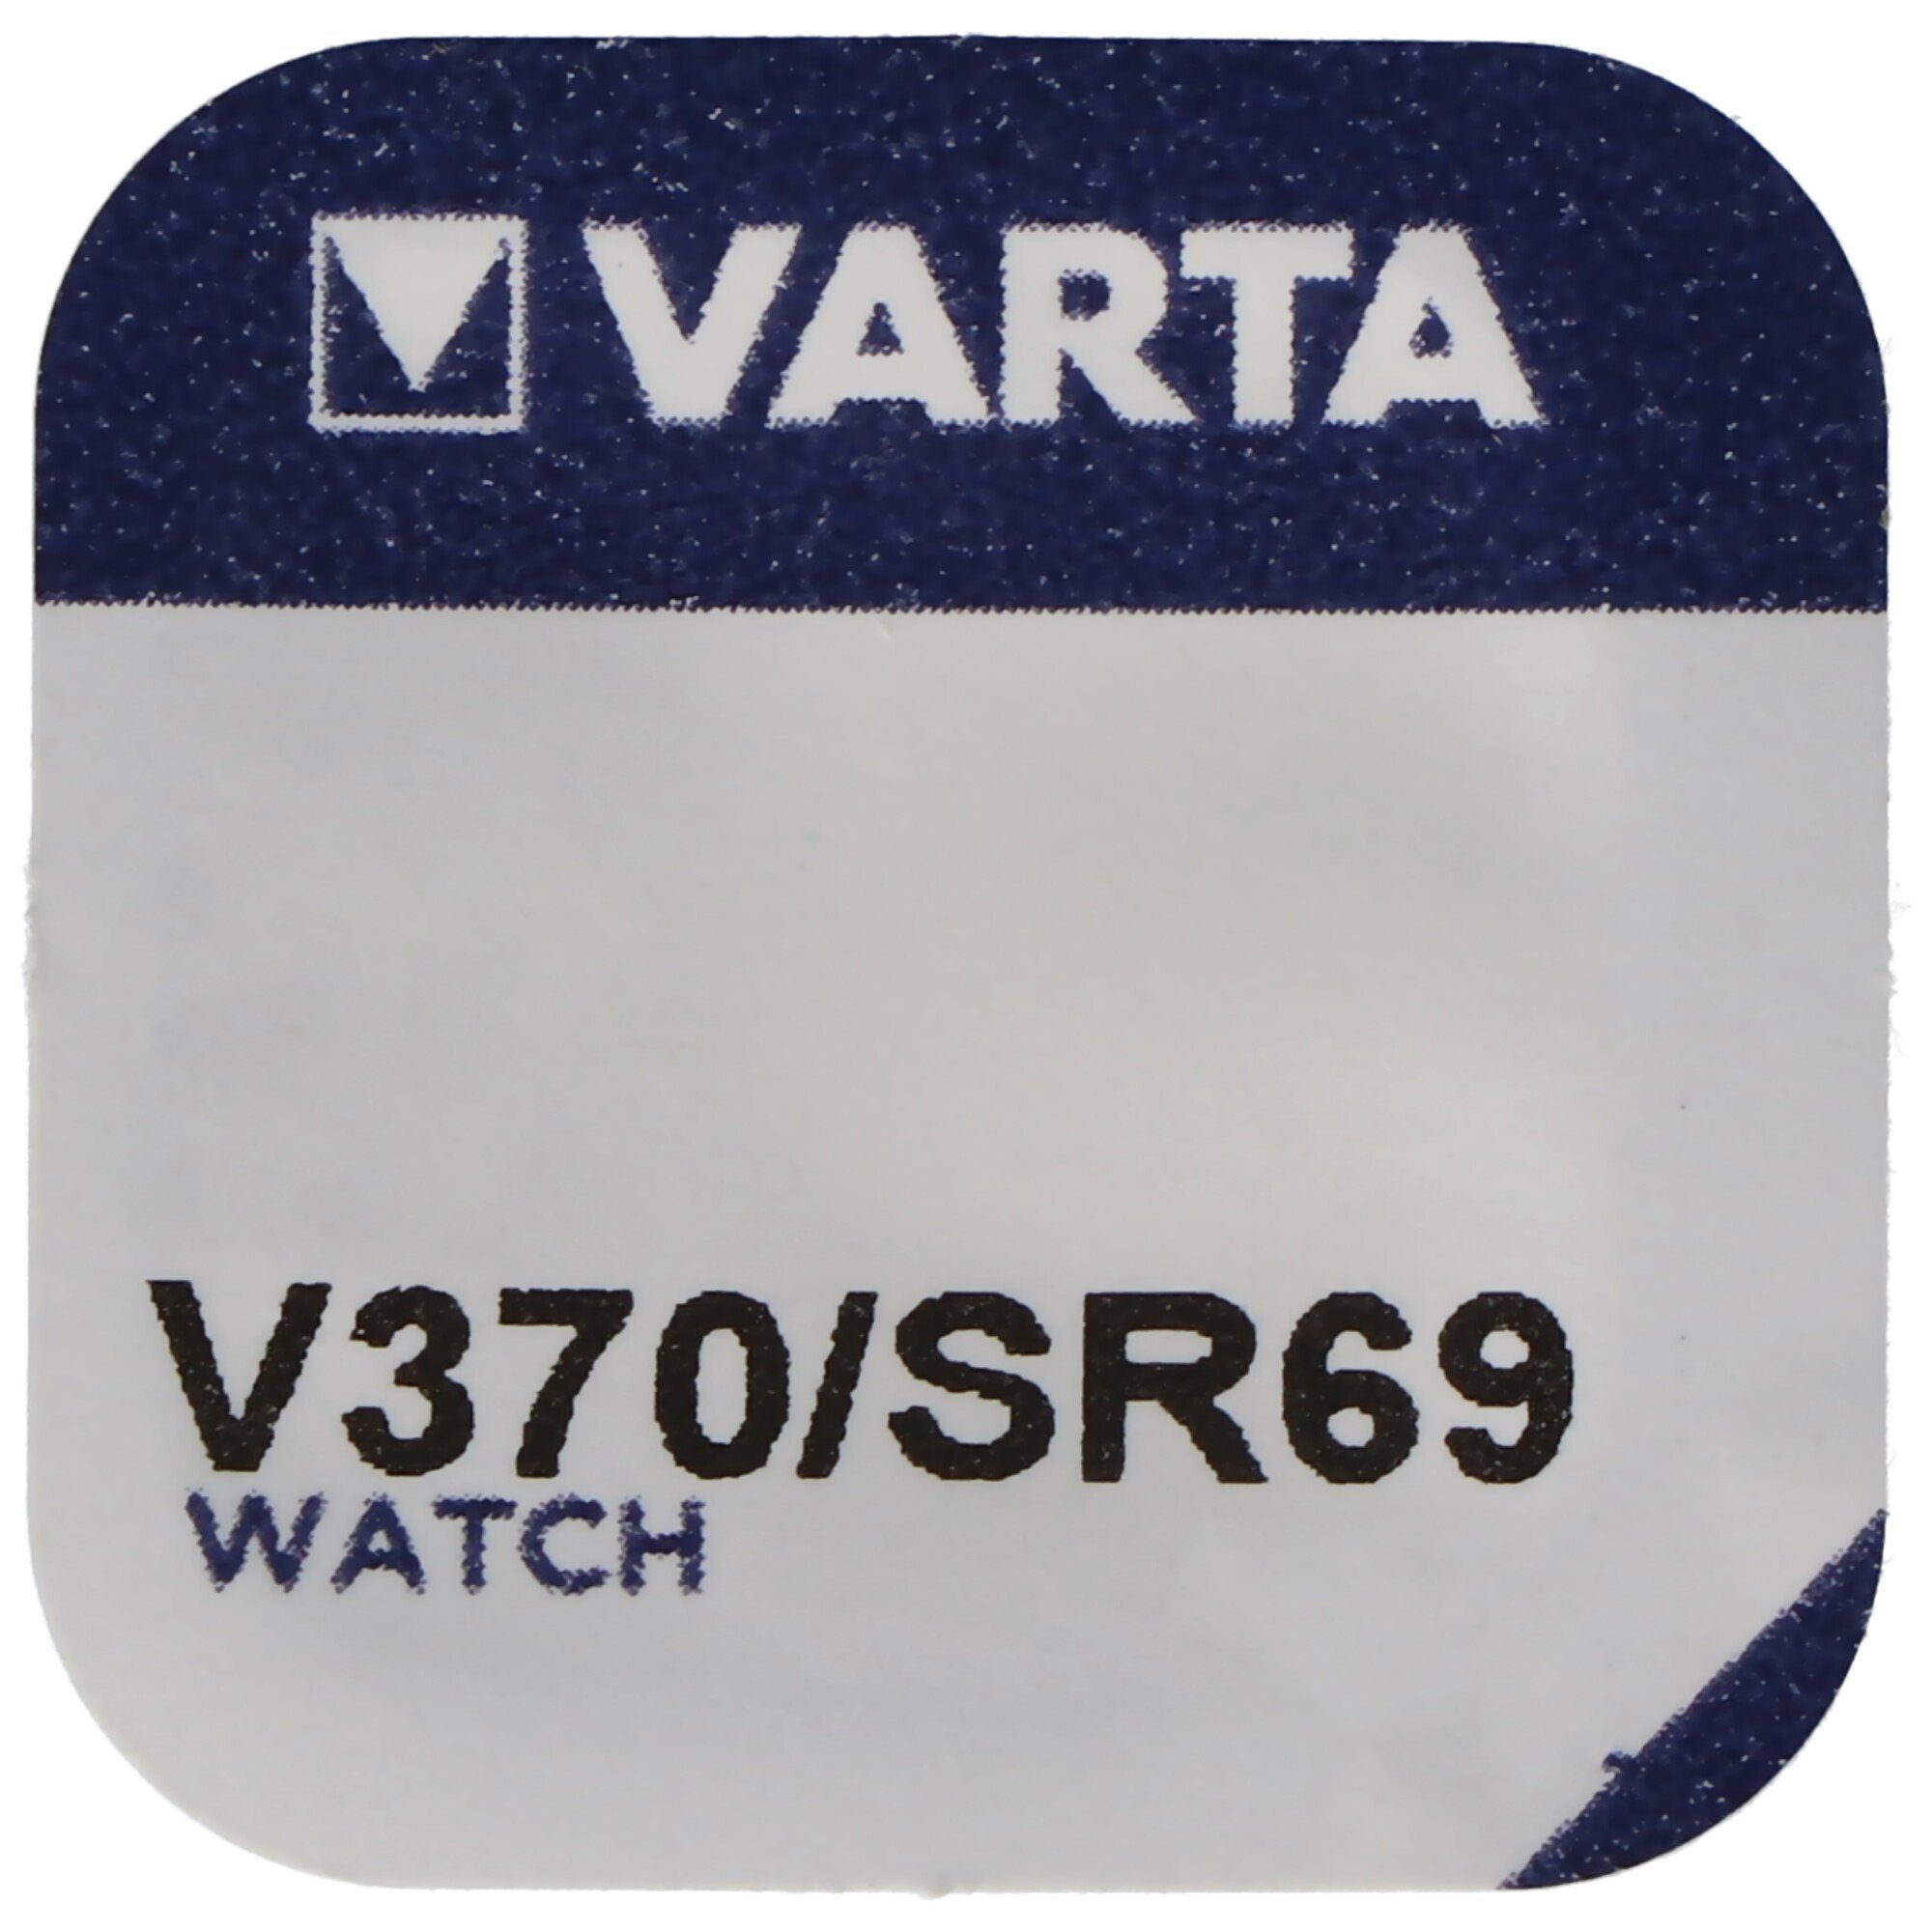 V) 370, Knopfzelle, etc. für Uhren SR69, Varta (1,6 SR920W Knopfzelle VARTA V370,